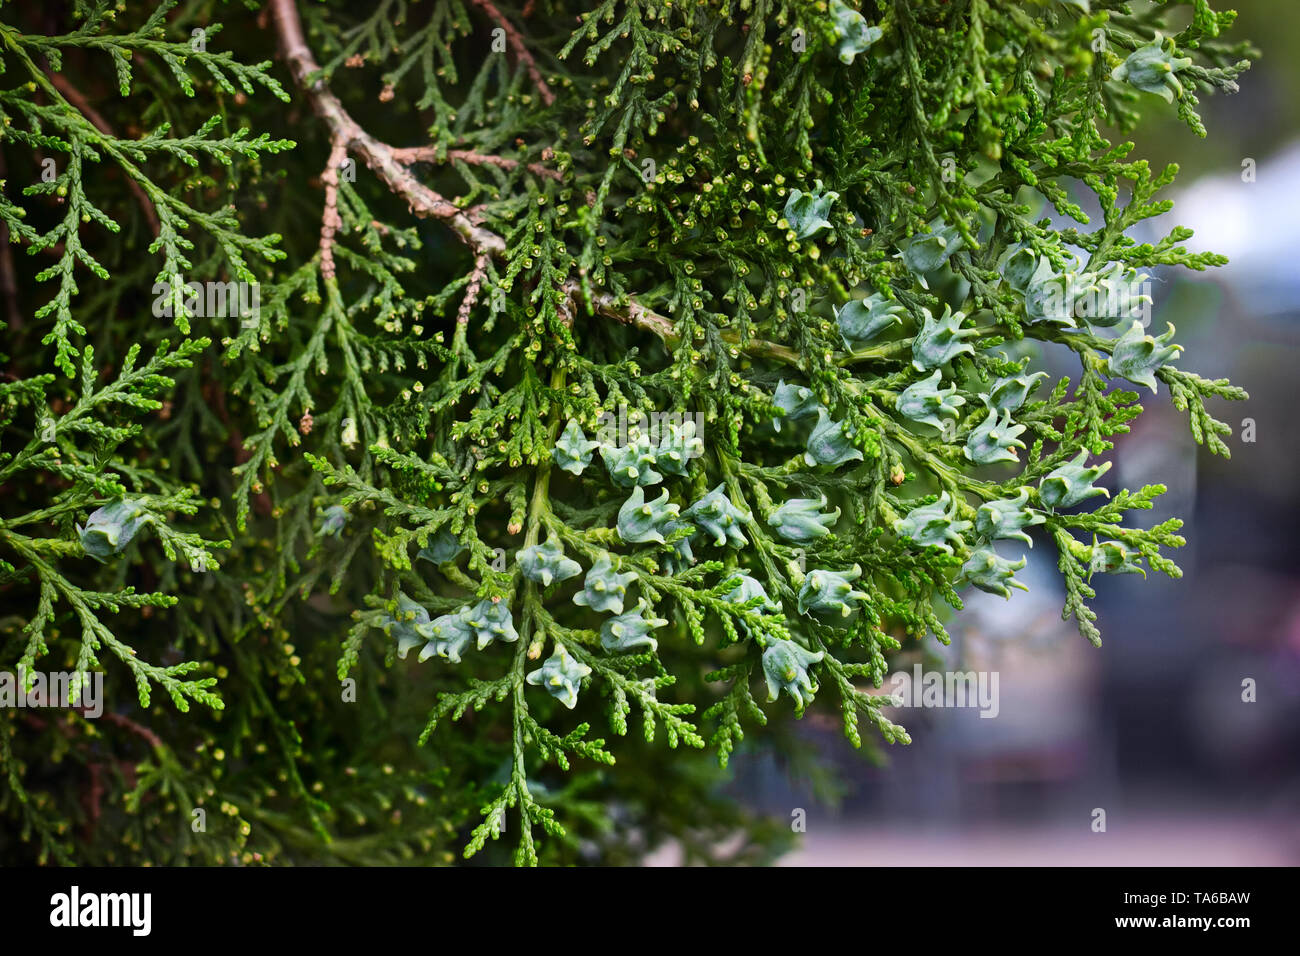 Les aiguilles de conifères de jeunes cyprès dans le jardin botanique de près. Banque D'Images